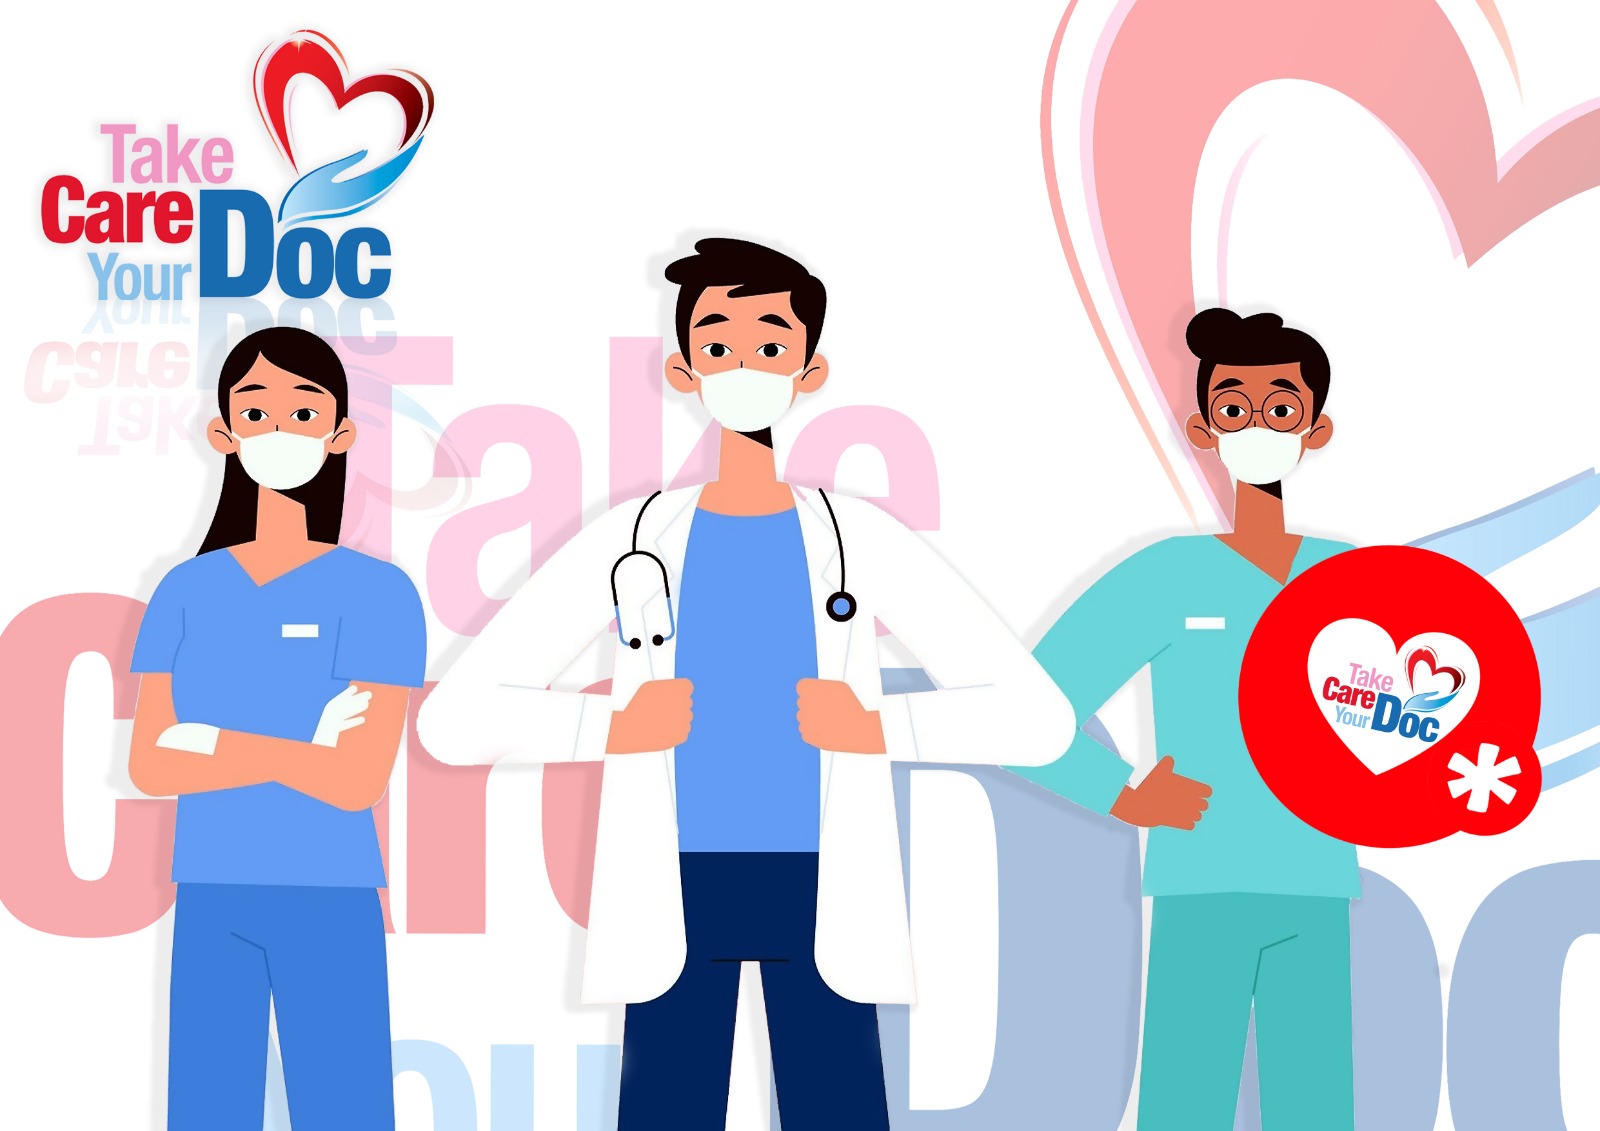 TAKE CARE YOUR DOC | nasce l’iniziativa a sostegno dei medici e degli ospedali italiani impegnati contro la pandemia